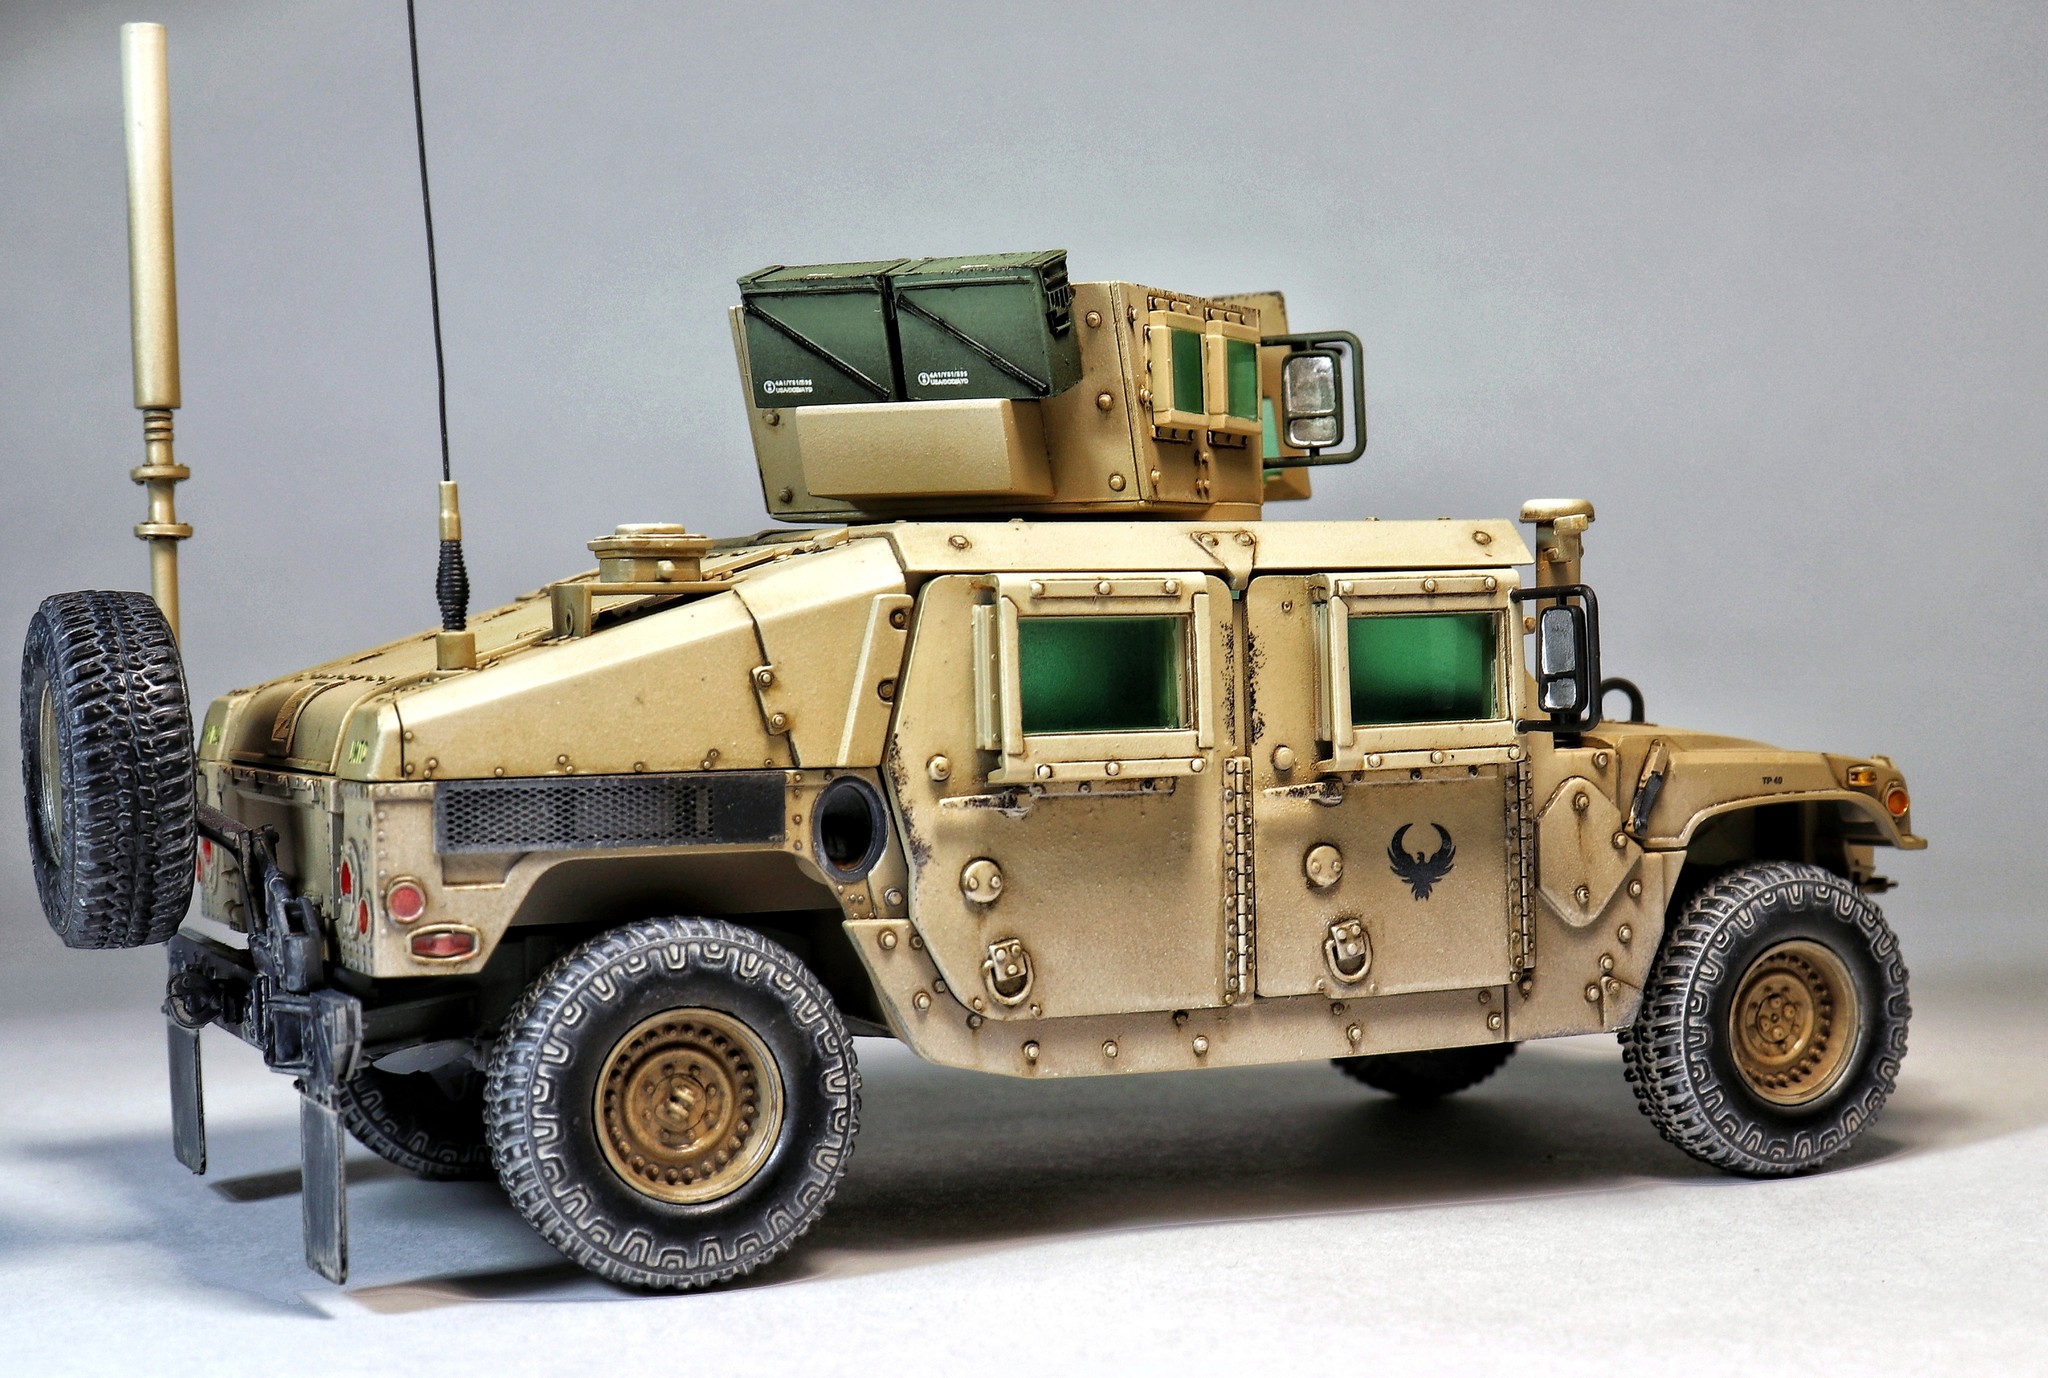 Experienced warrior - Scale model, Models, Humvee, SUV, Longpost